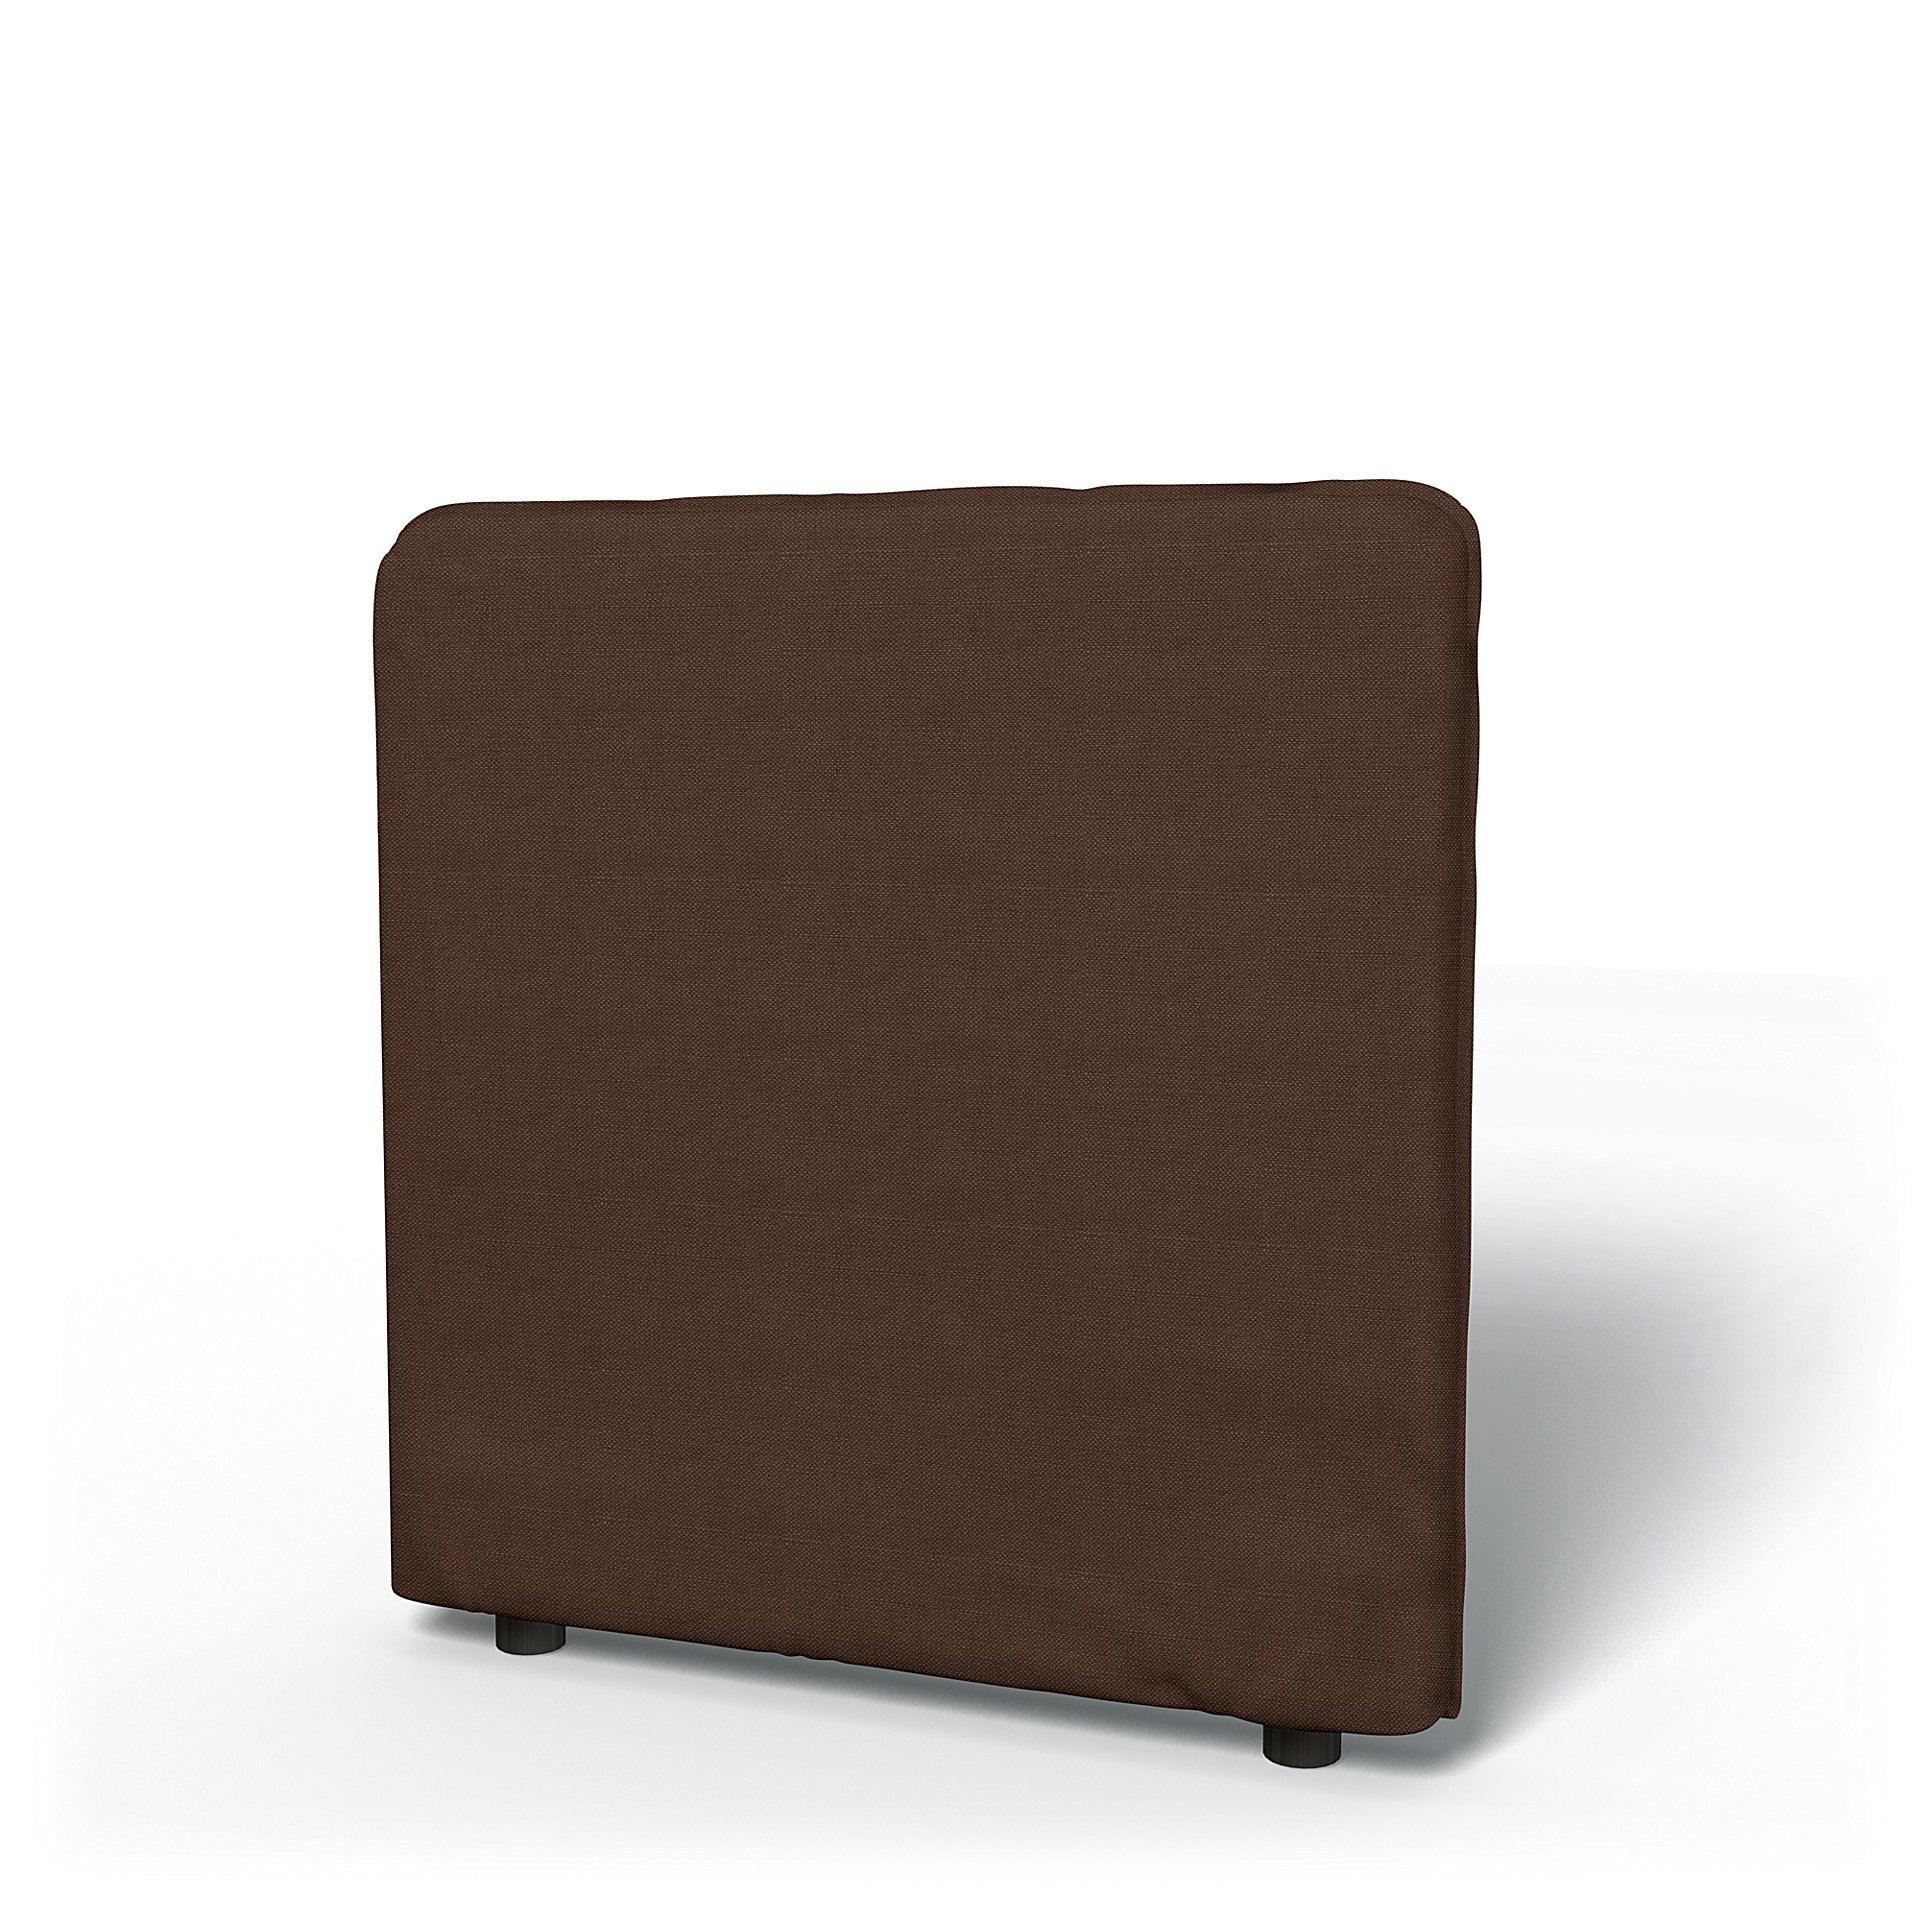 IKEA - Vallentuna Low Backrest Cover 80x80cm 32x32in, Chocolate, Linen - Bemz